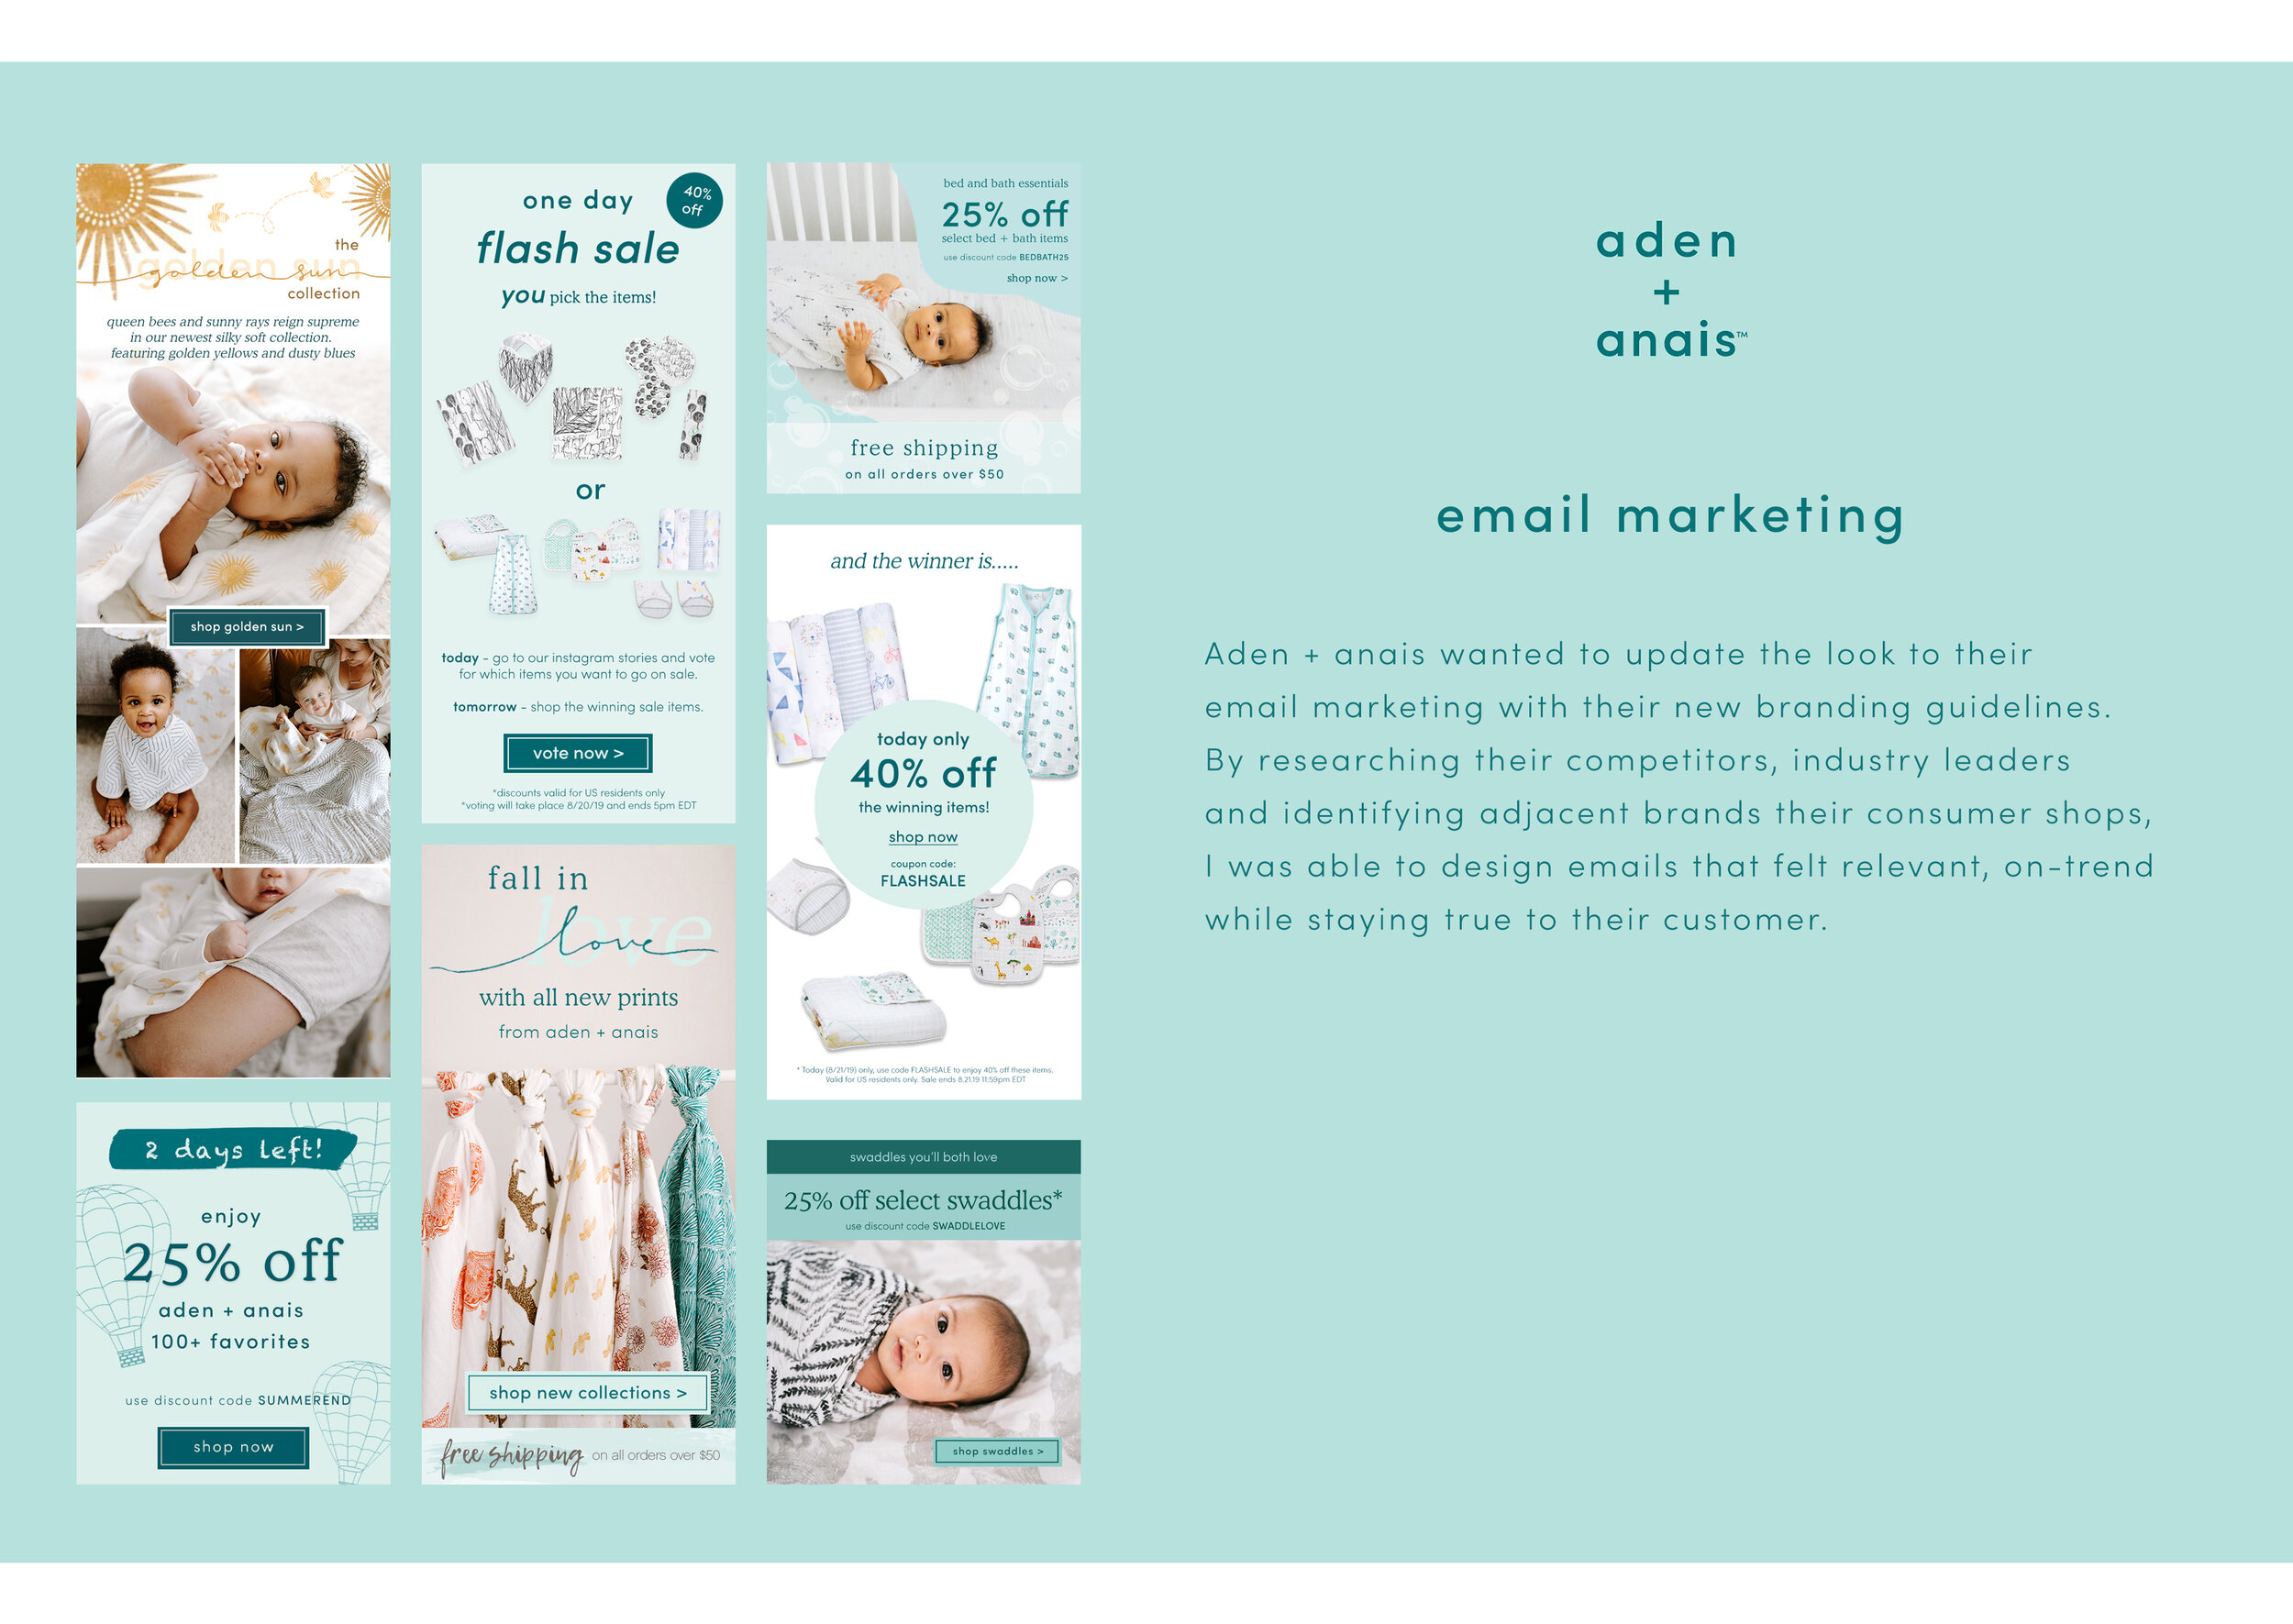 emailmarketing.jpg